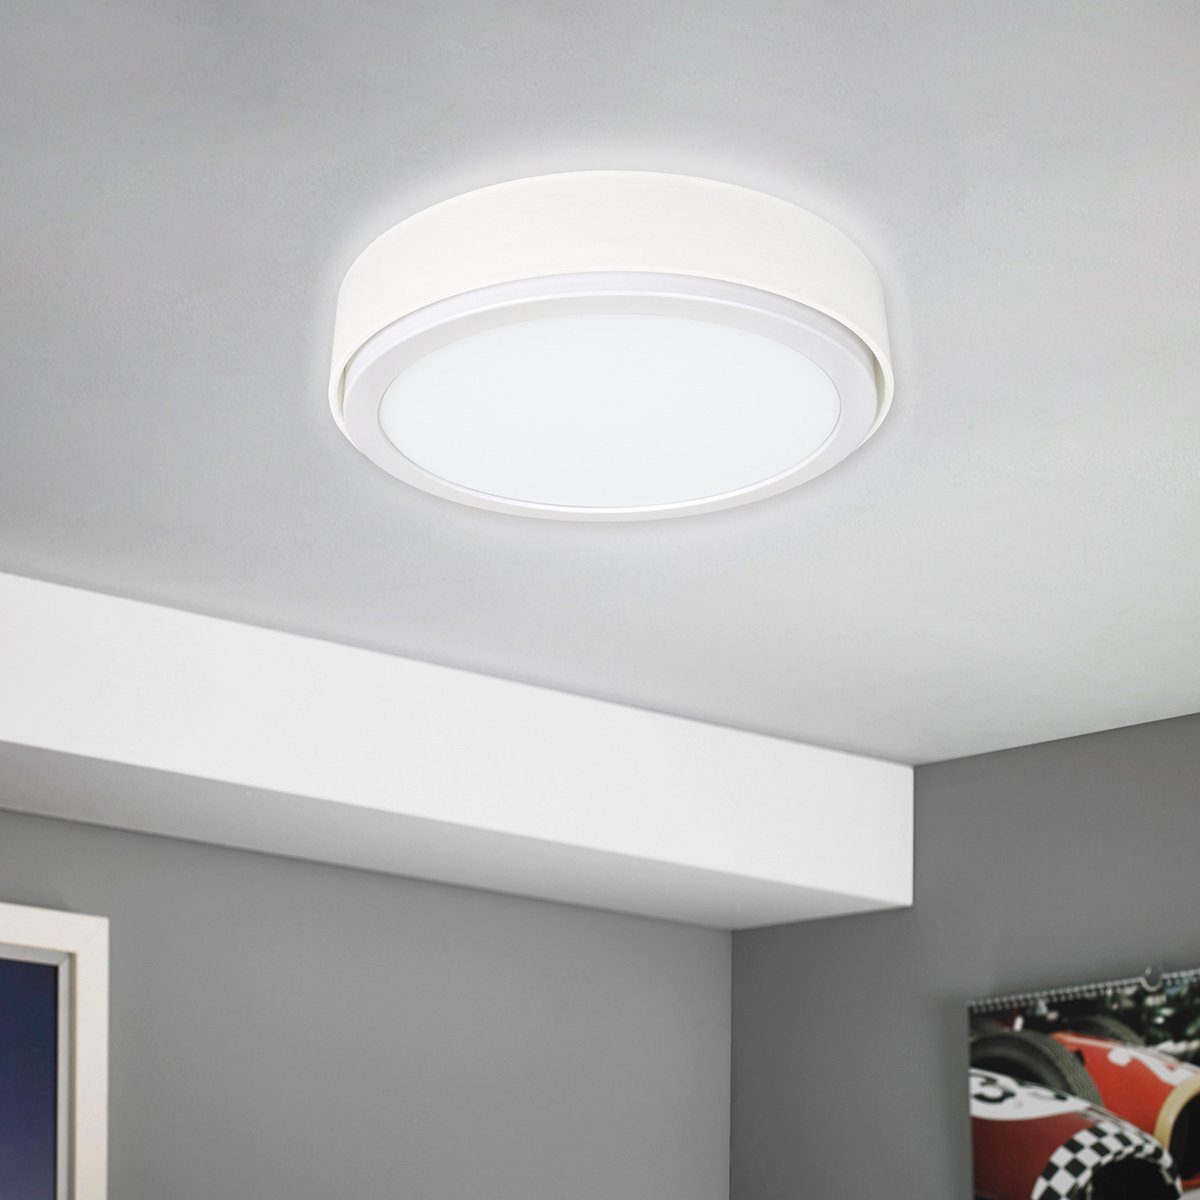 MeLiTec LED Deckenleuchte D85-1, warmweiß bis kaltweiß, LED, Wandleuchte, Deckenleuchte, Wandlampe mit Schirm, 900 Lumen, rund, weiß